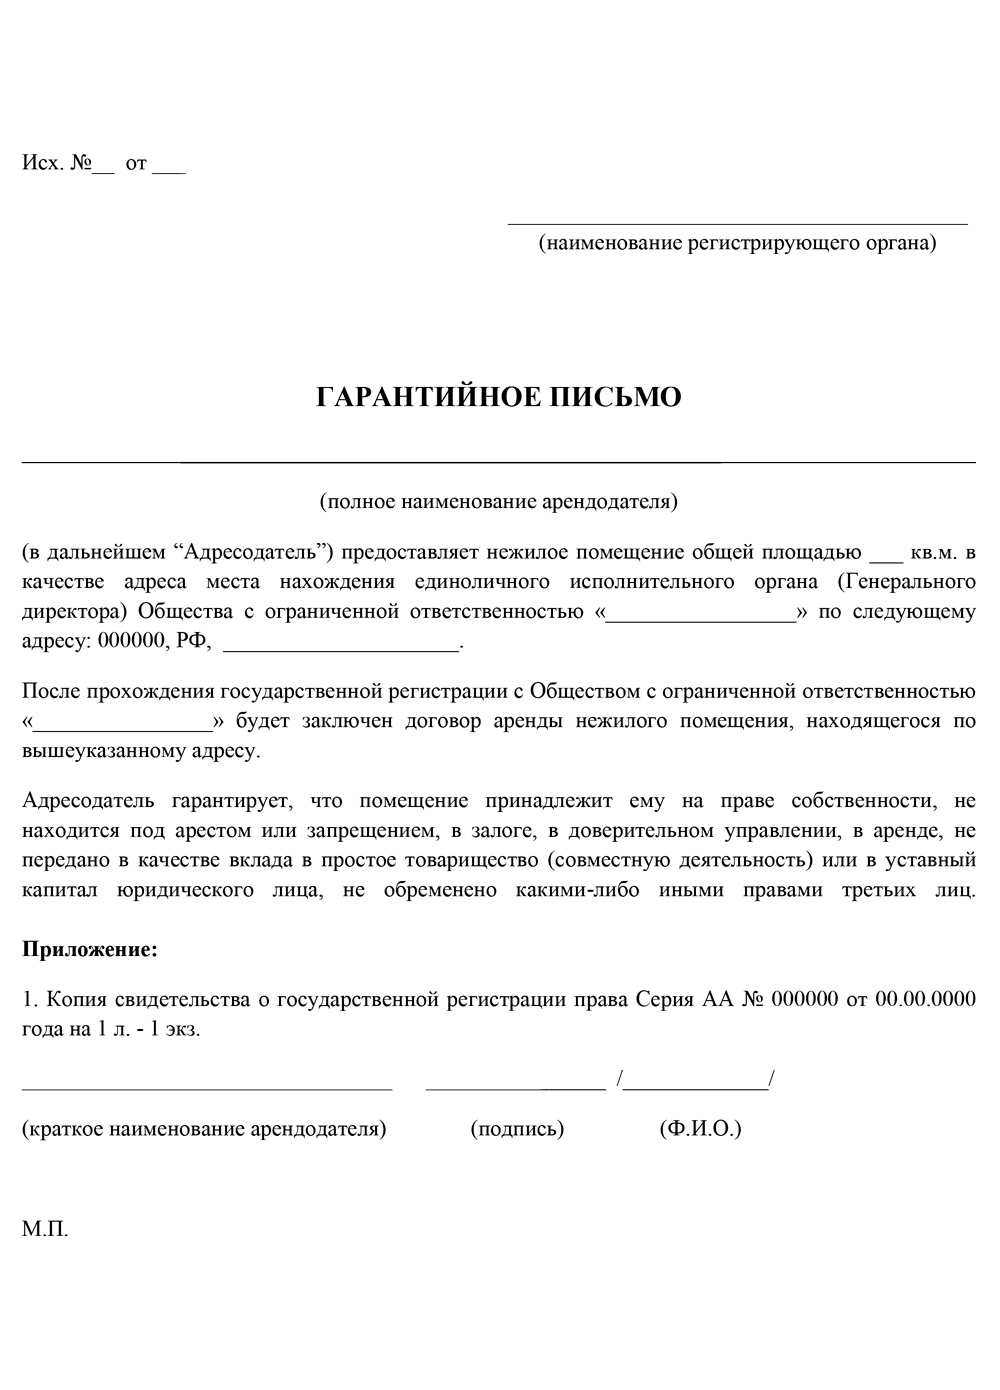 Письмо собственника о предоставлении юридического адреса ликвидация фирмы в москве